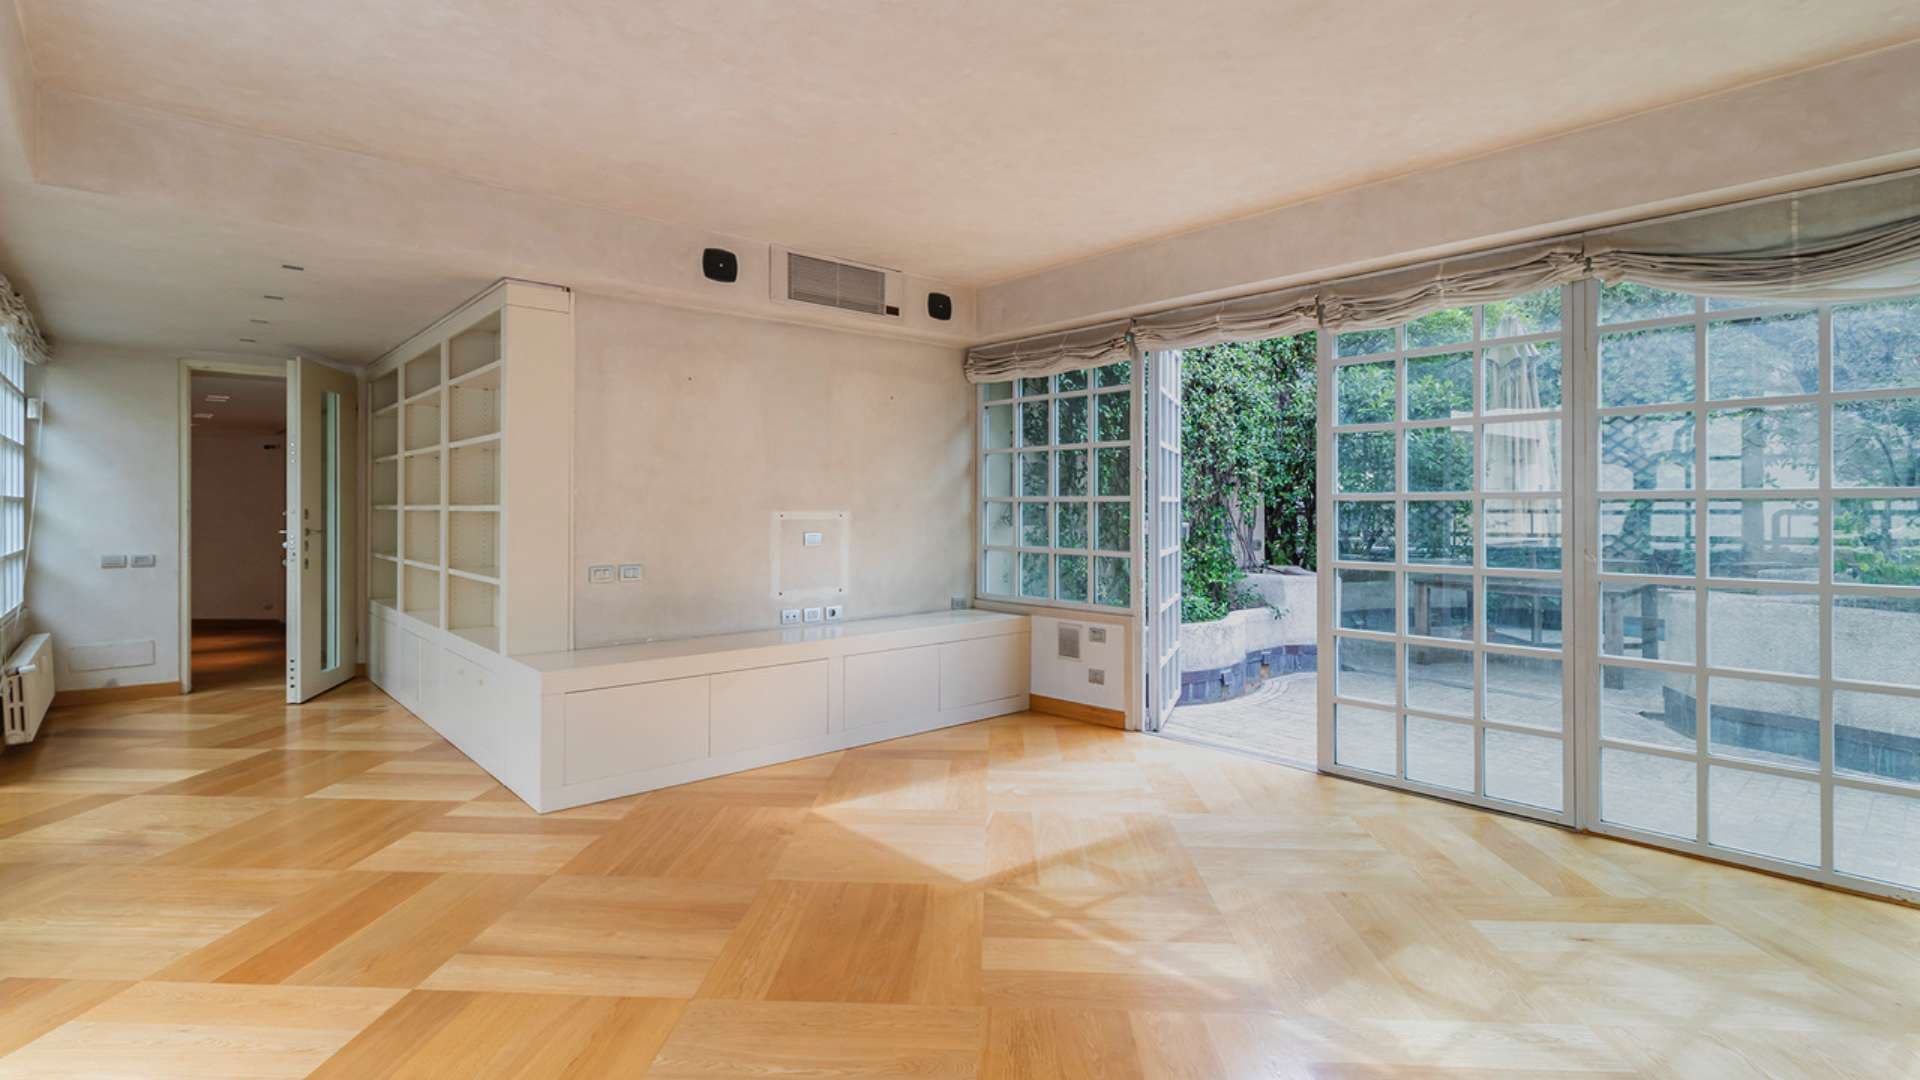  Bedroom Villa For Sale Via Serbelloni Lp11991 F9295df4add3e80.jpg